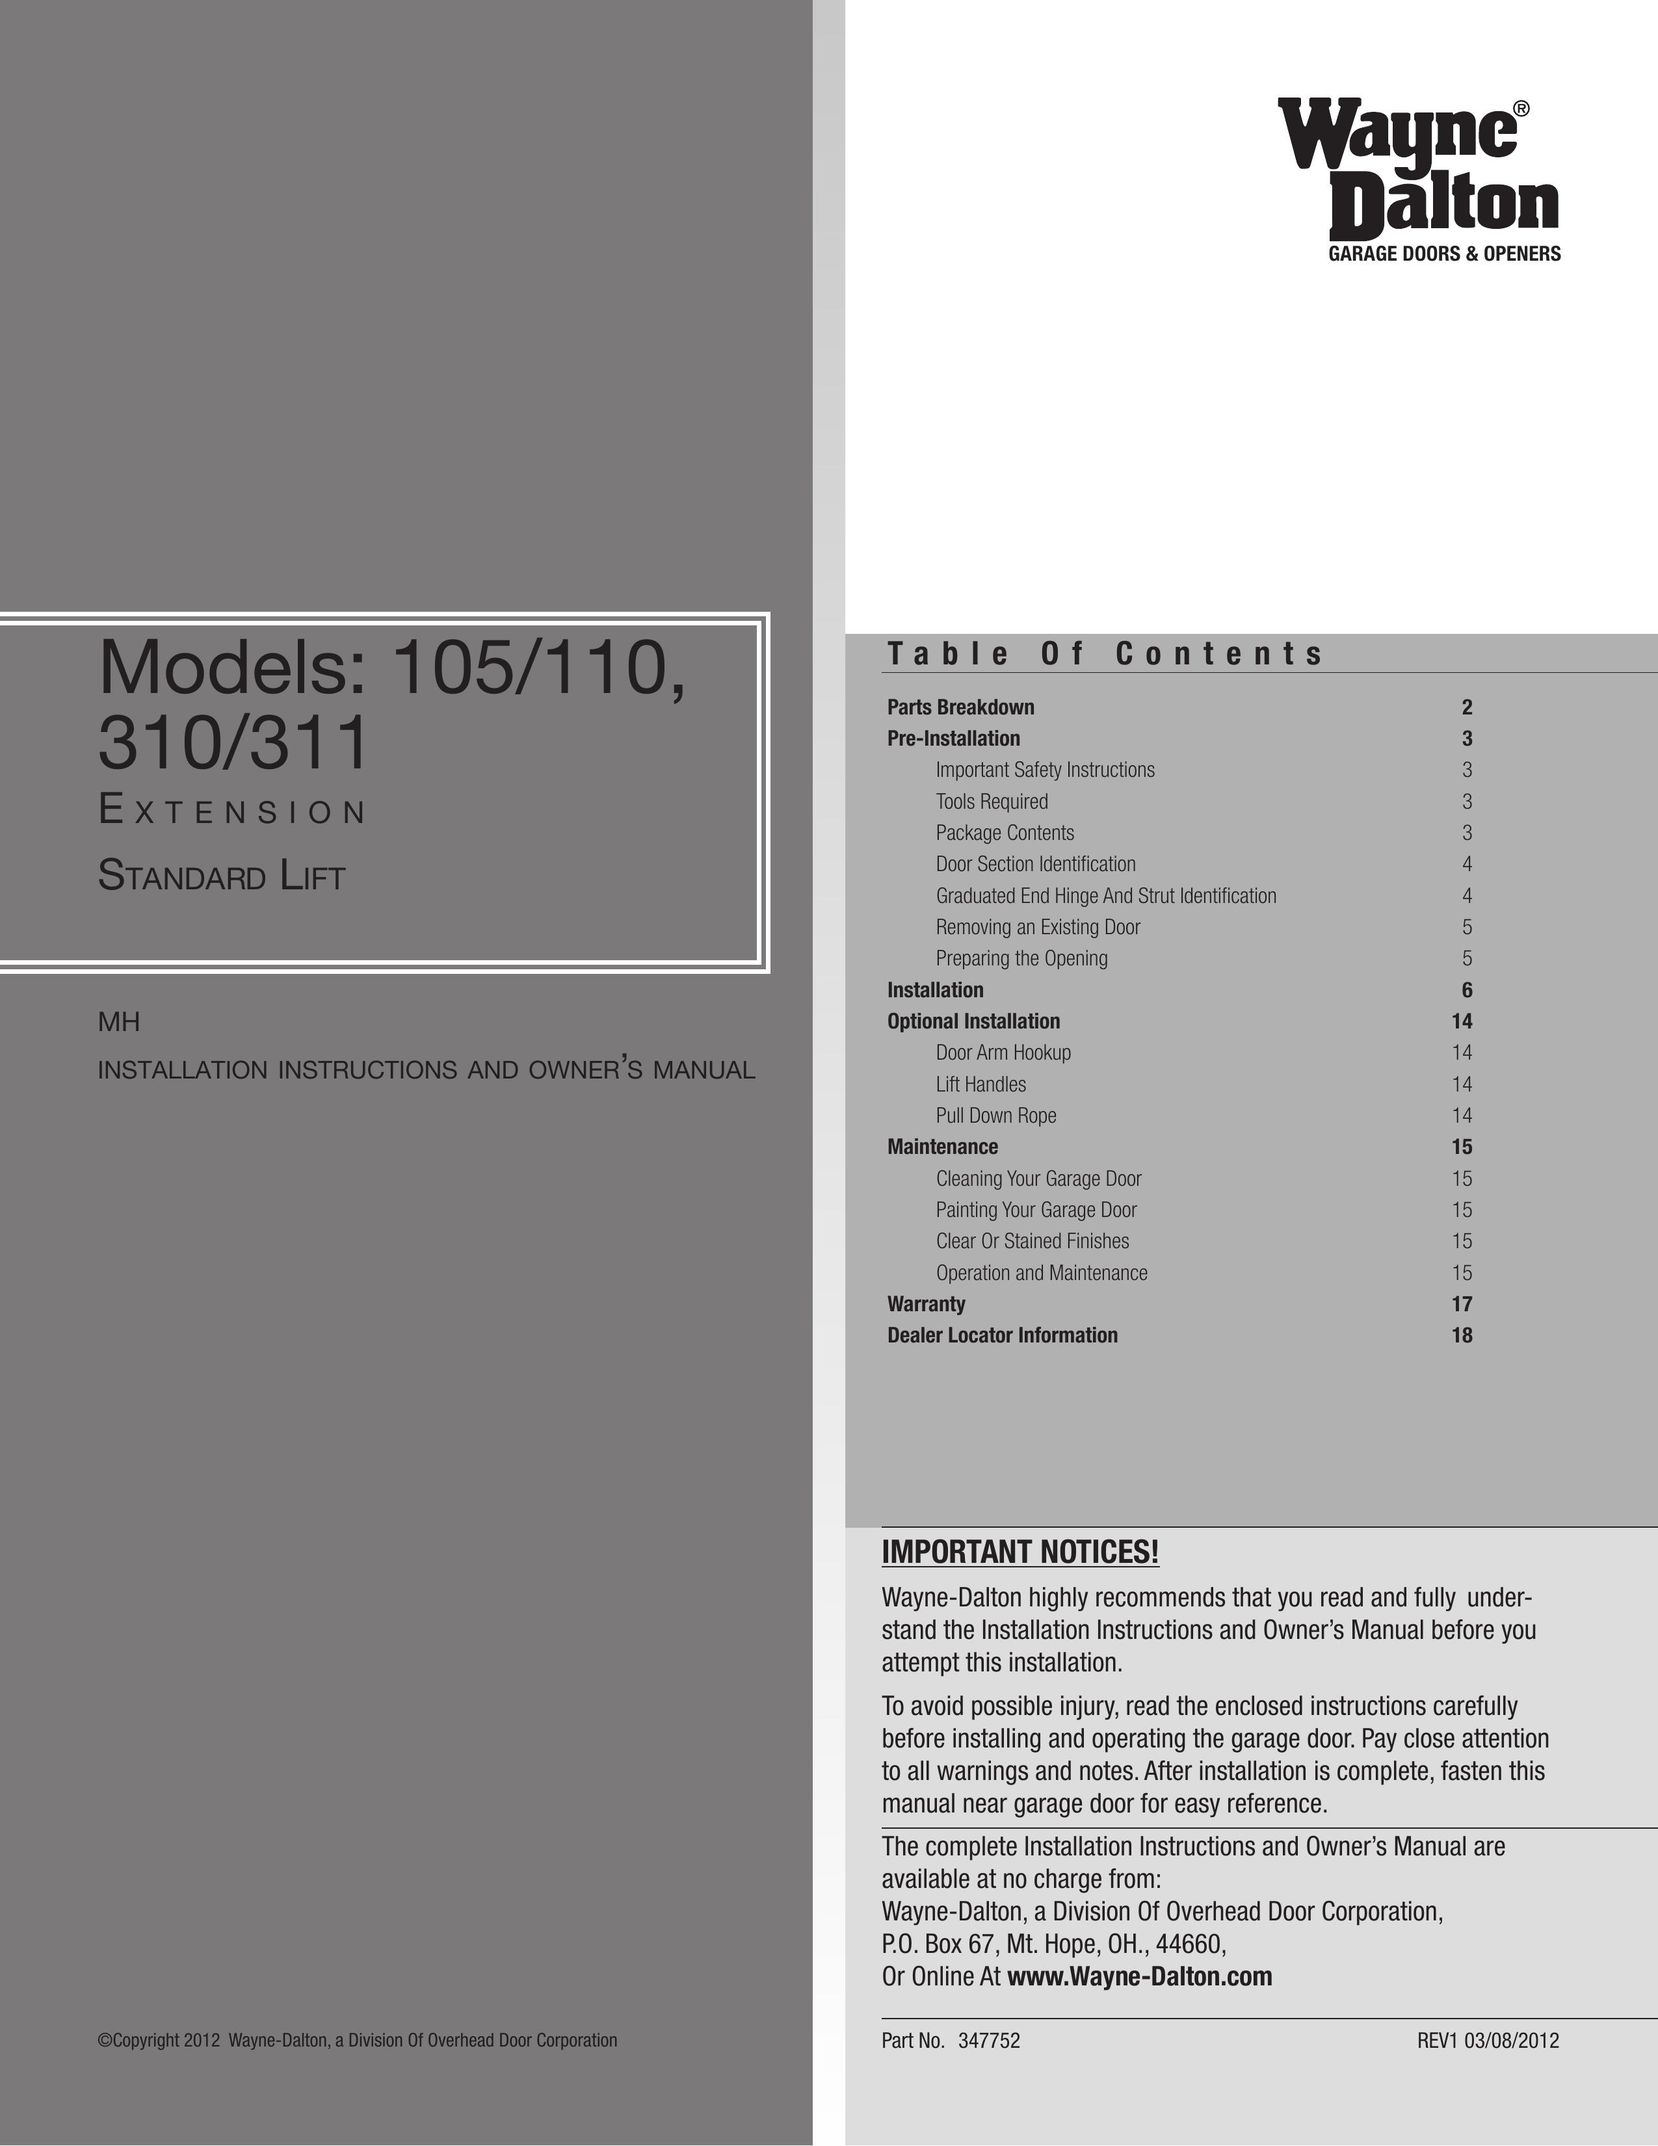 Wayne-Dalton 105/110 Garage Door Opener User Manual